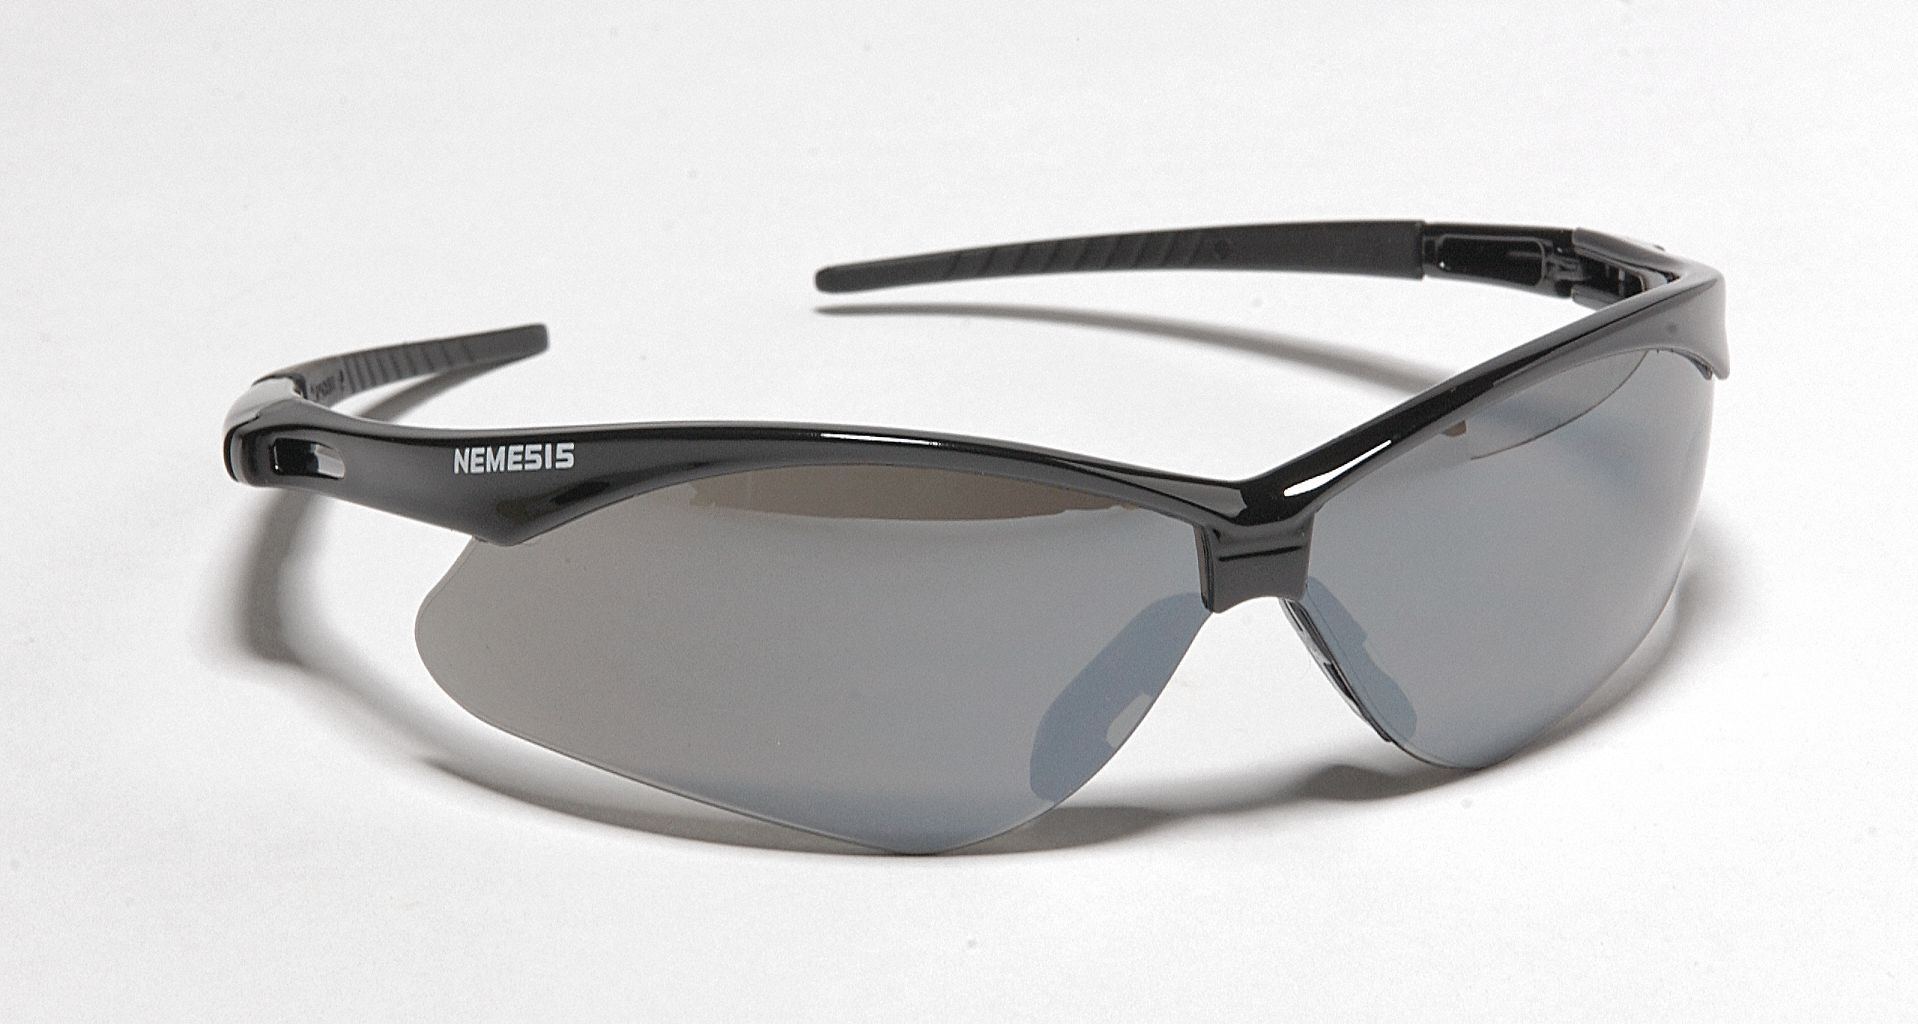 Kleenguard V30 Nemesis Scratch Resistant Safety Glasses Smoke Mirror Lens Color 2uyf4 25688